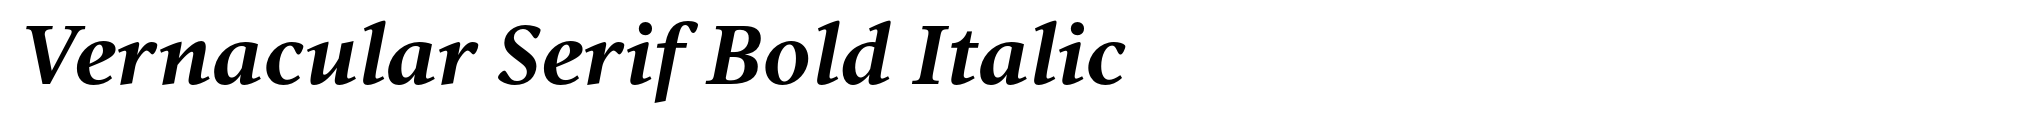 Vernacular Serif Bold Italic image